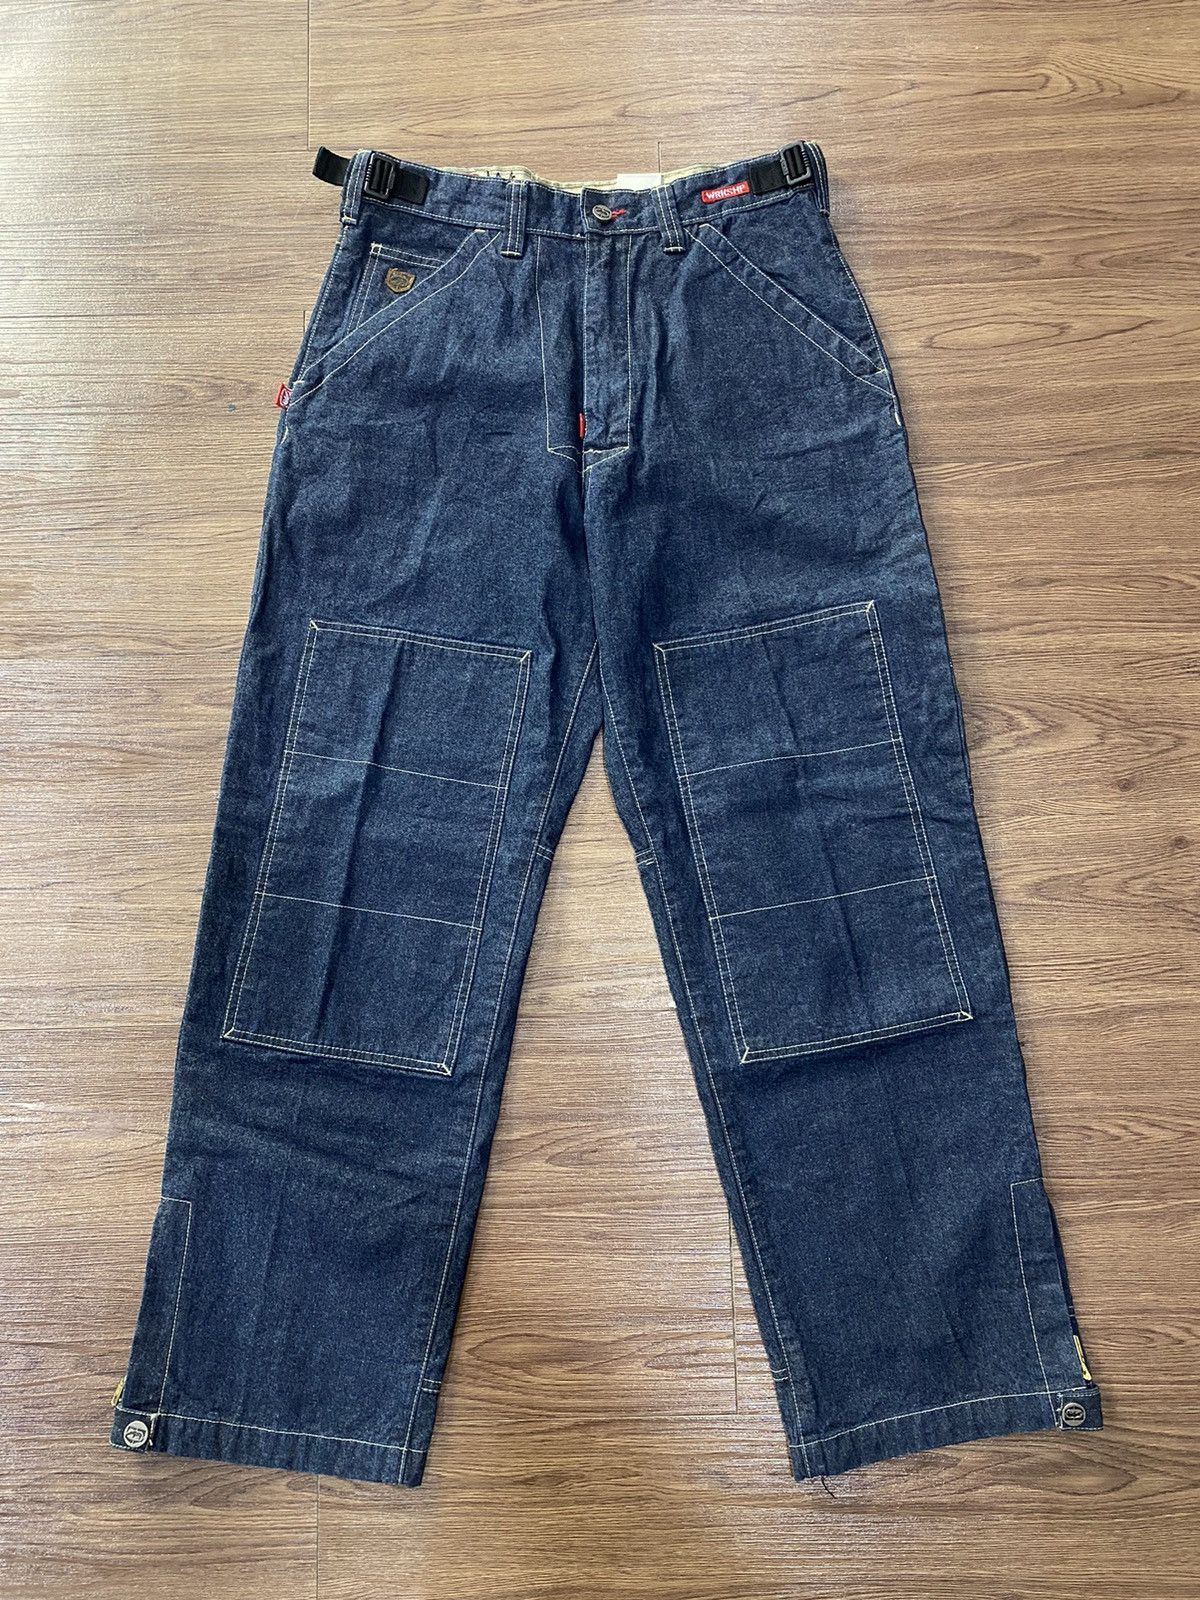 Ecko Unltd. Baggy Jeans Ecko Unltd Double Knee Limited Edition | Grailed